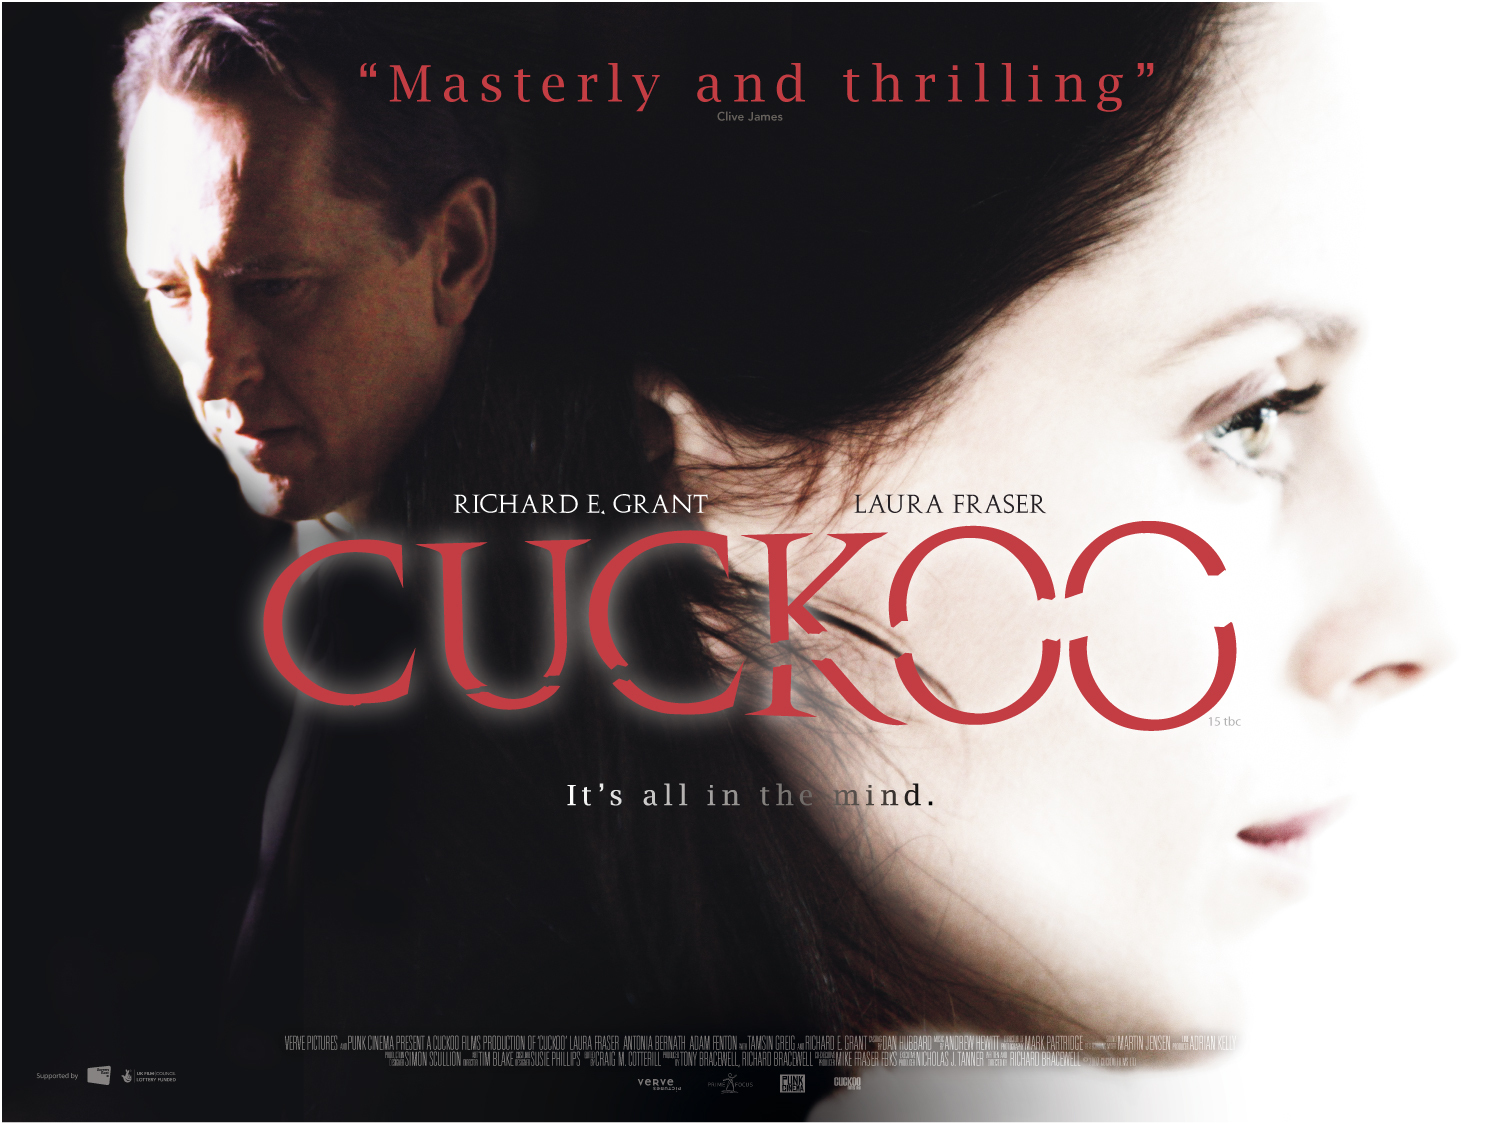 Cuckoo (2009) Screenshot 1